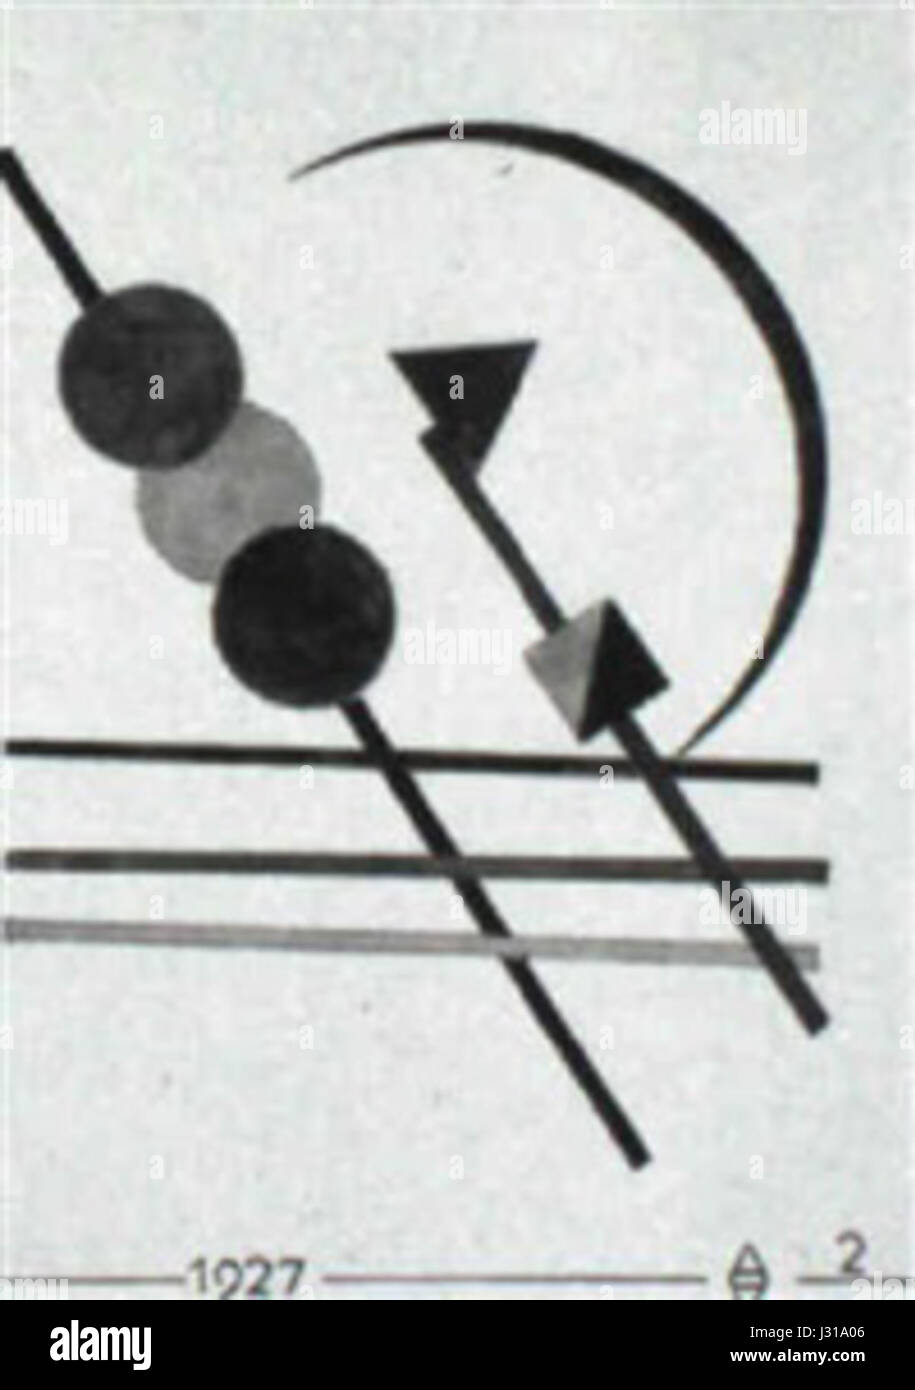 August Agatz Geometrische Komposition mit drei Kreisen Stock Photo